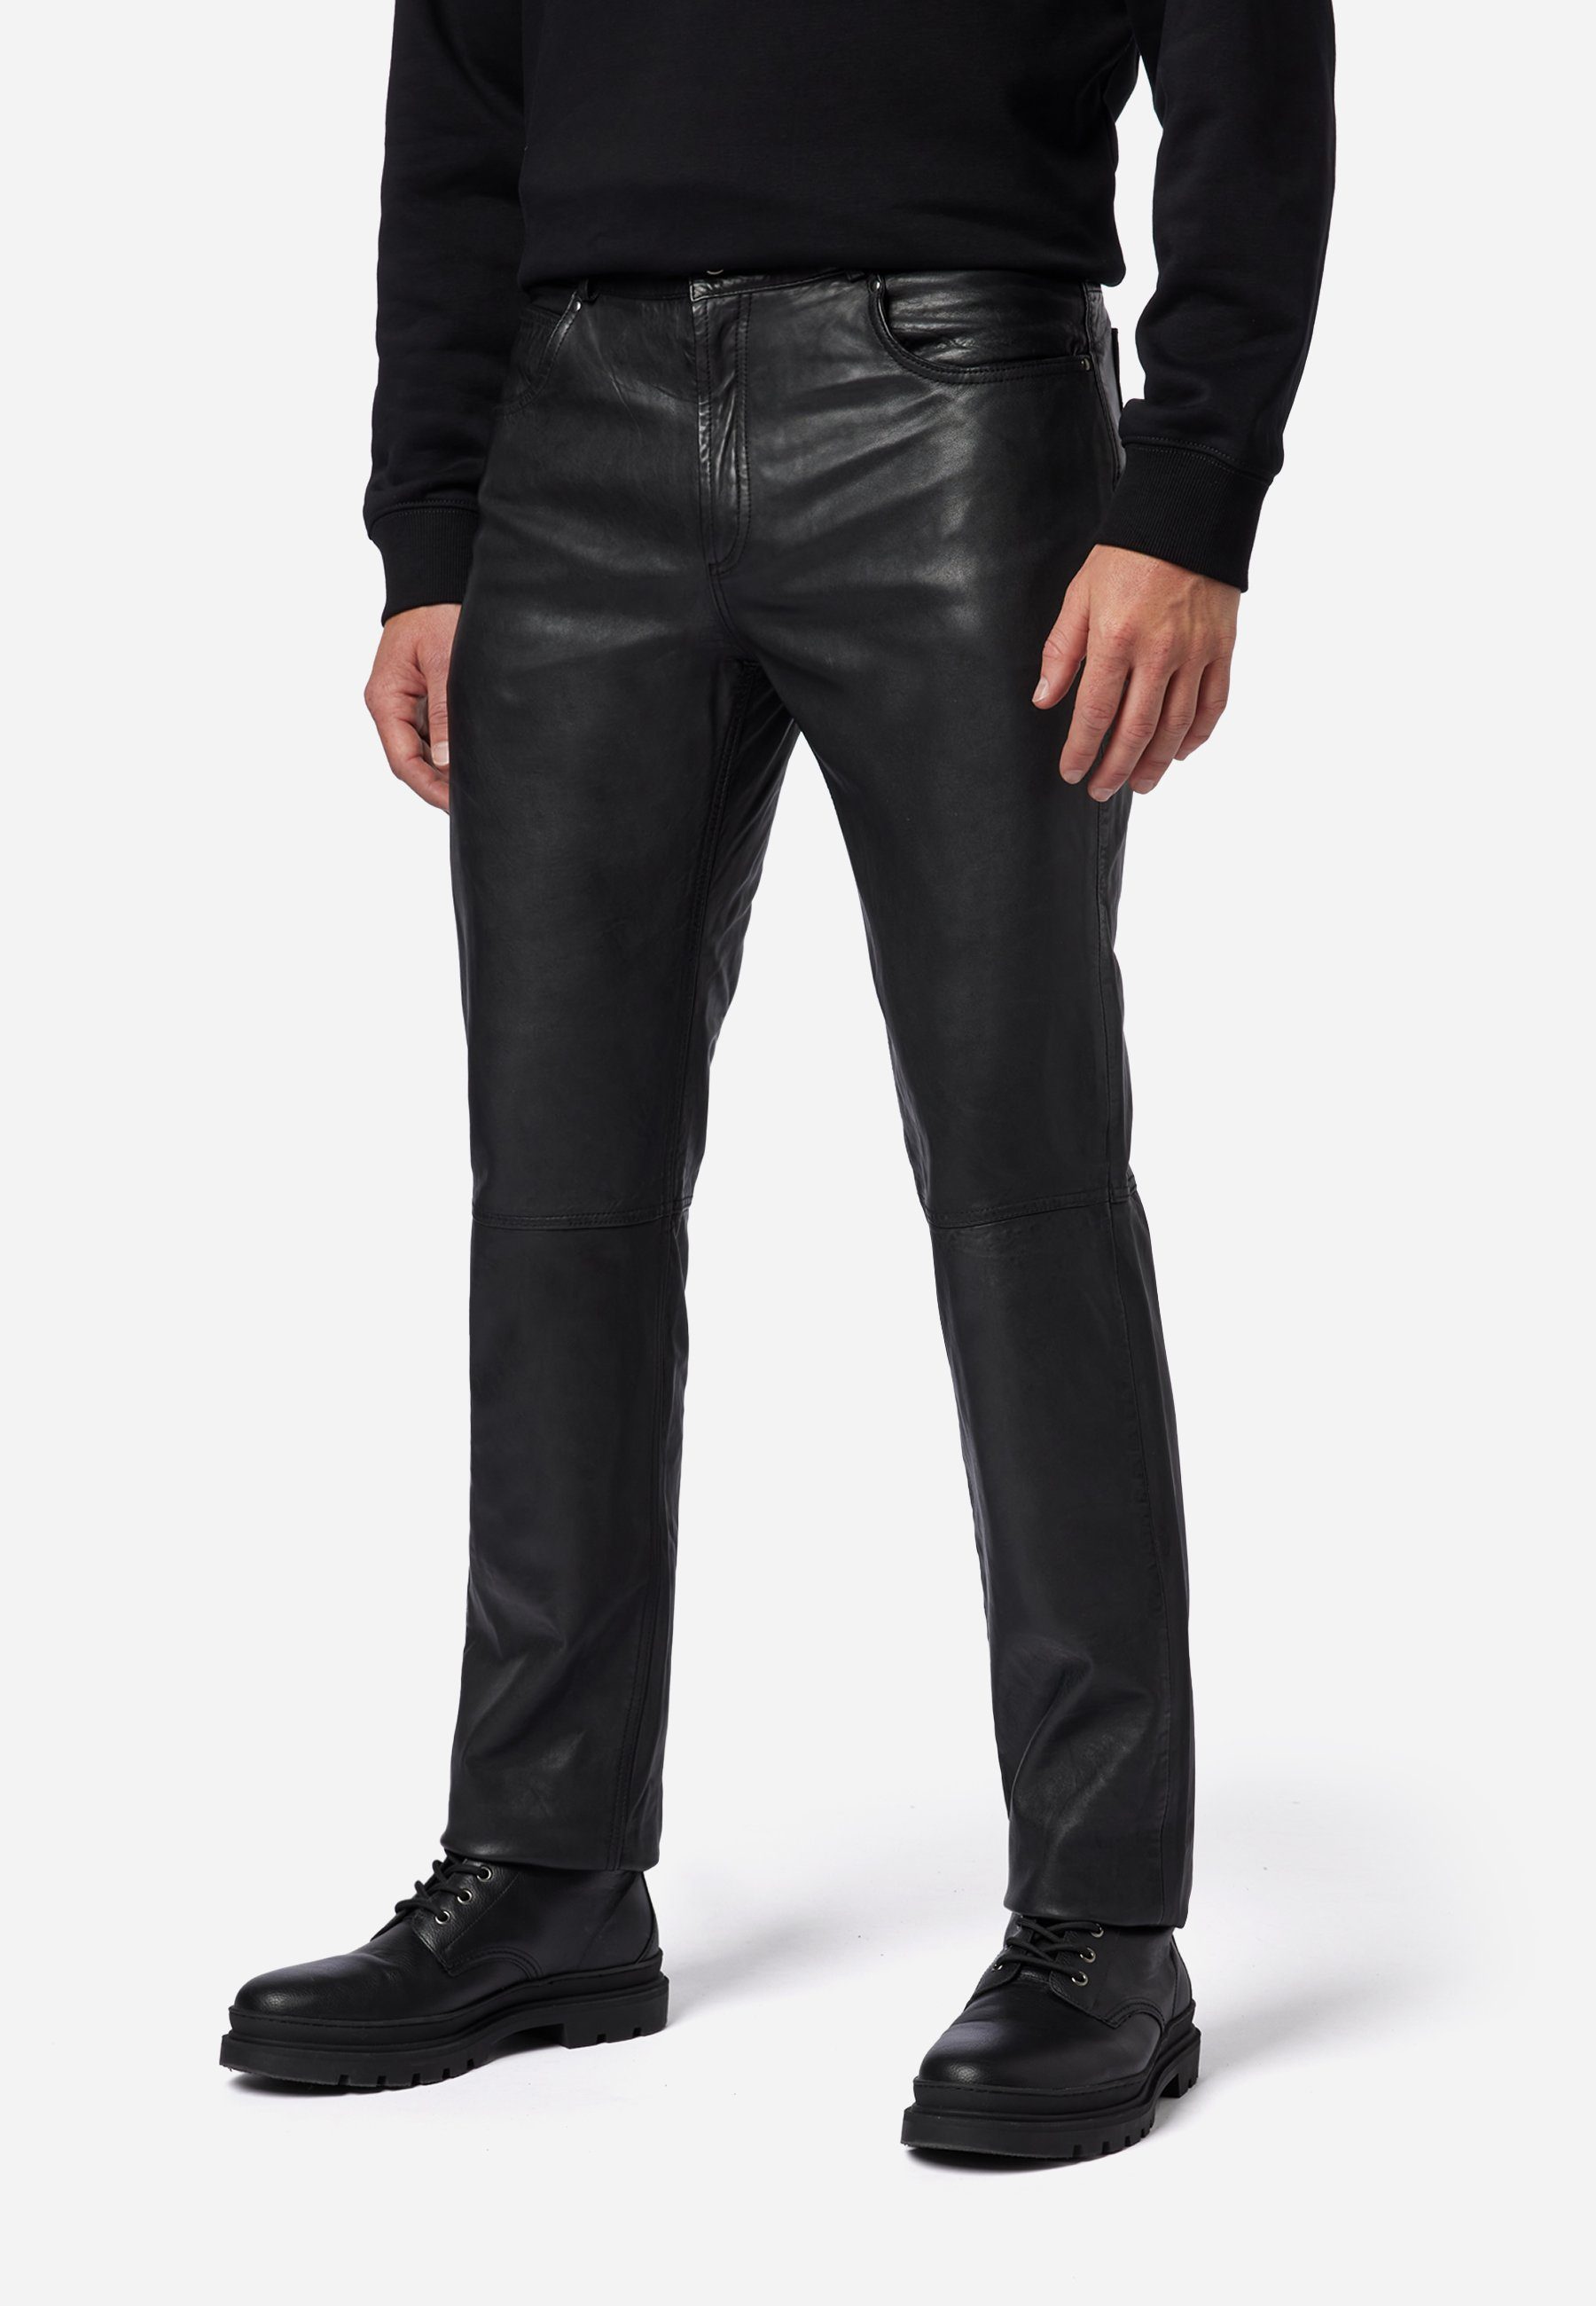 RICANO Lederhose Jeans-Optik Hochwertiges Leder; 5-Pocket Trant Schwarz Pant Lamm-Nappa